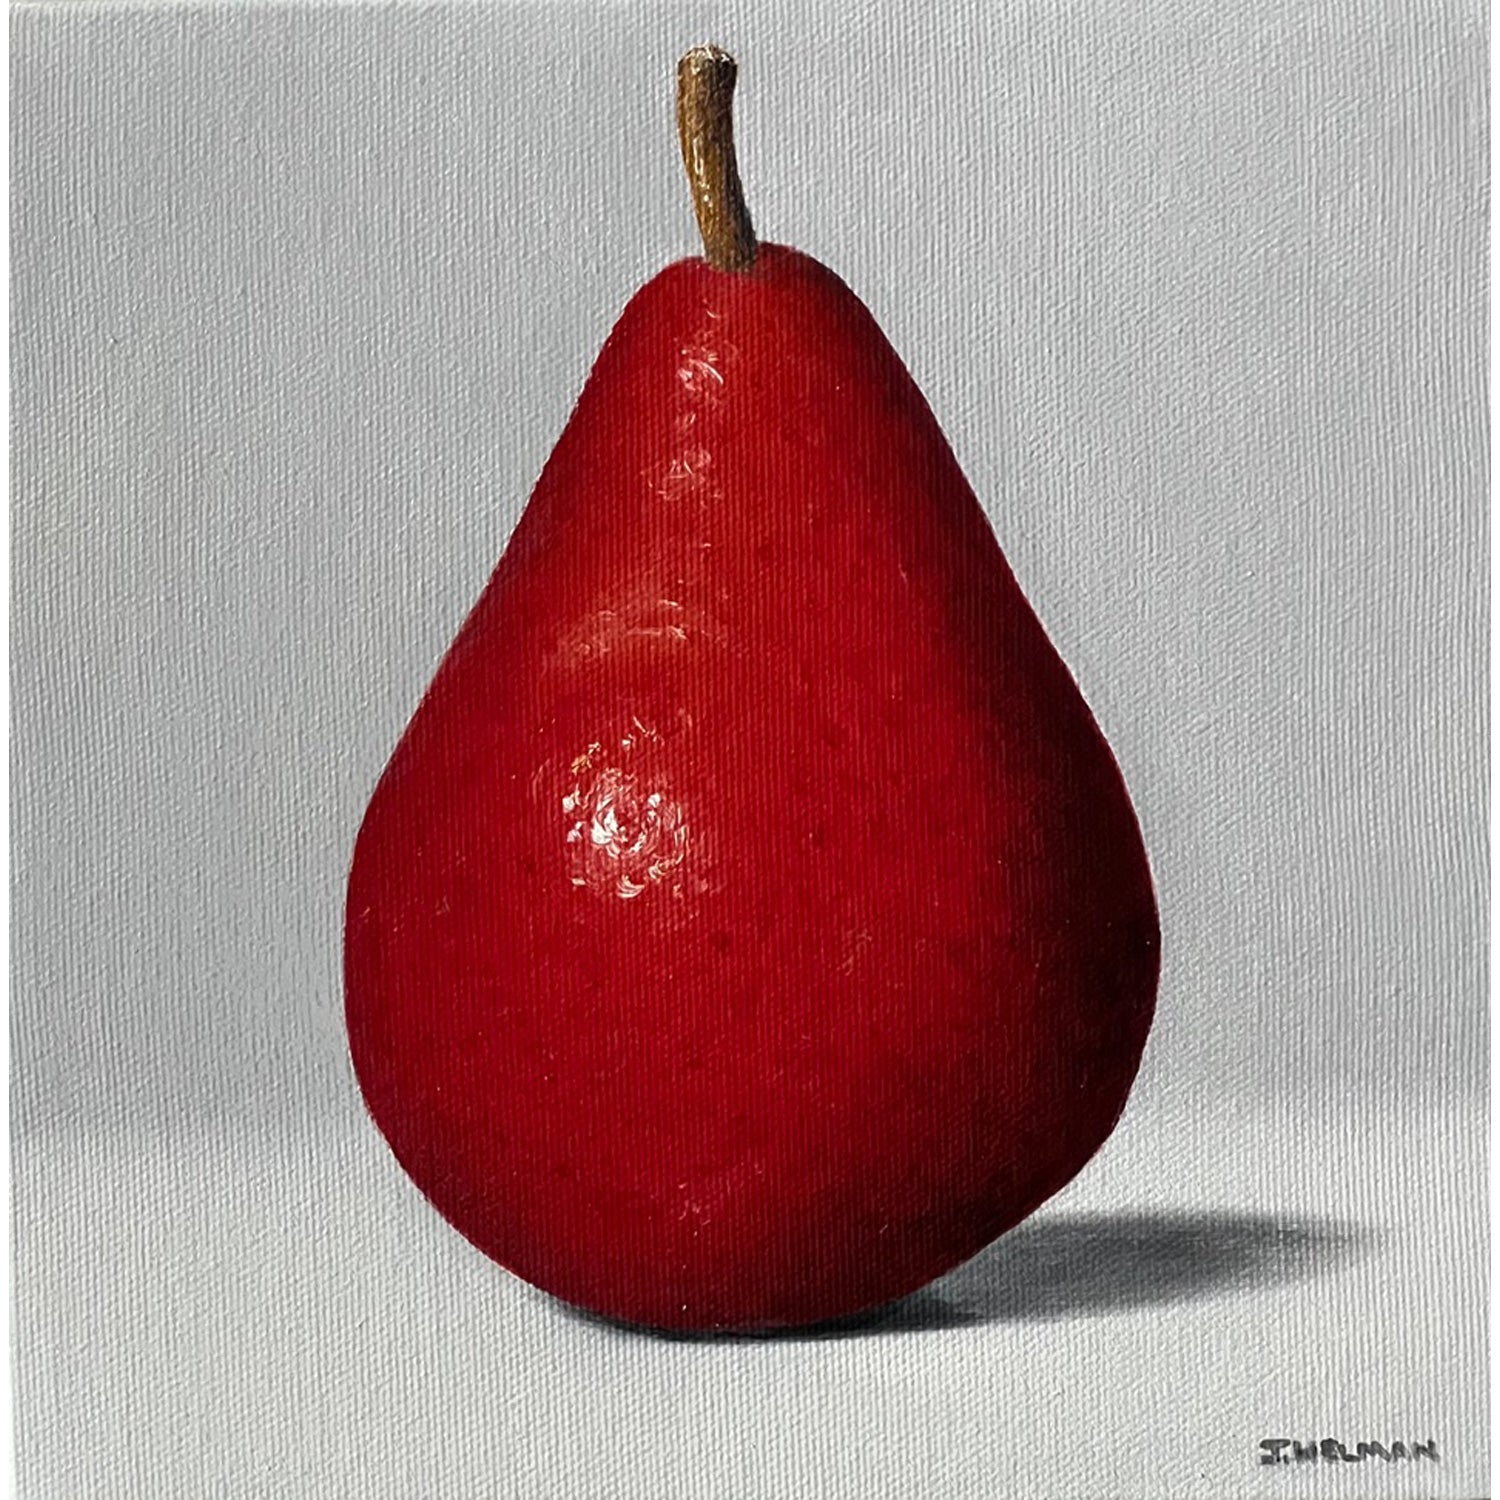 Joanne Helman - Red Pear, 8" x 8"